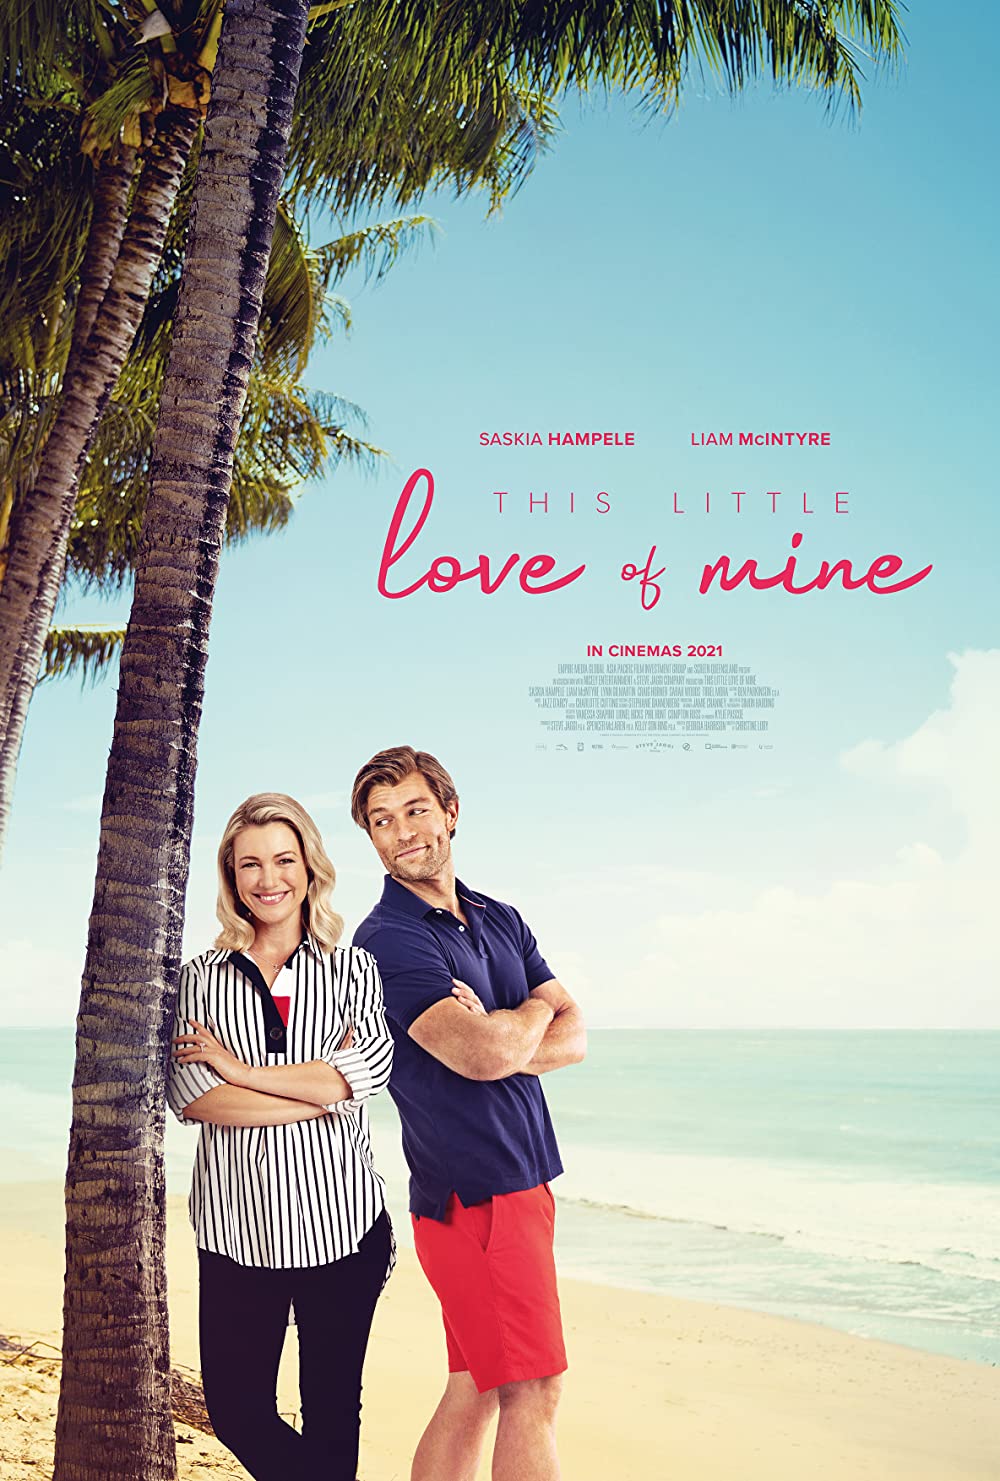 หนัง This Little Love of Mine (2021) ดิส ลิตเติ้ล เลิฟ ออฟ ไมน์ (ซับไทย)